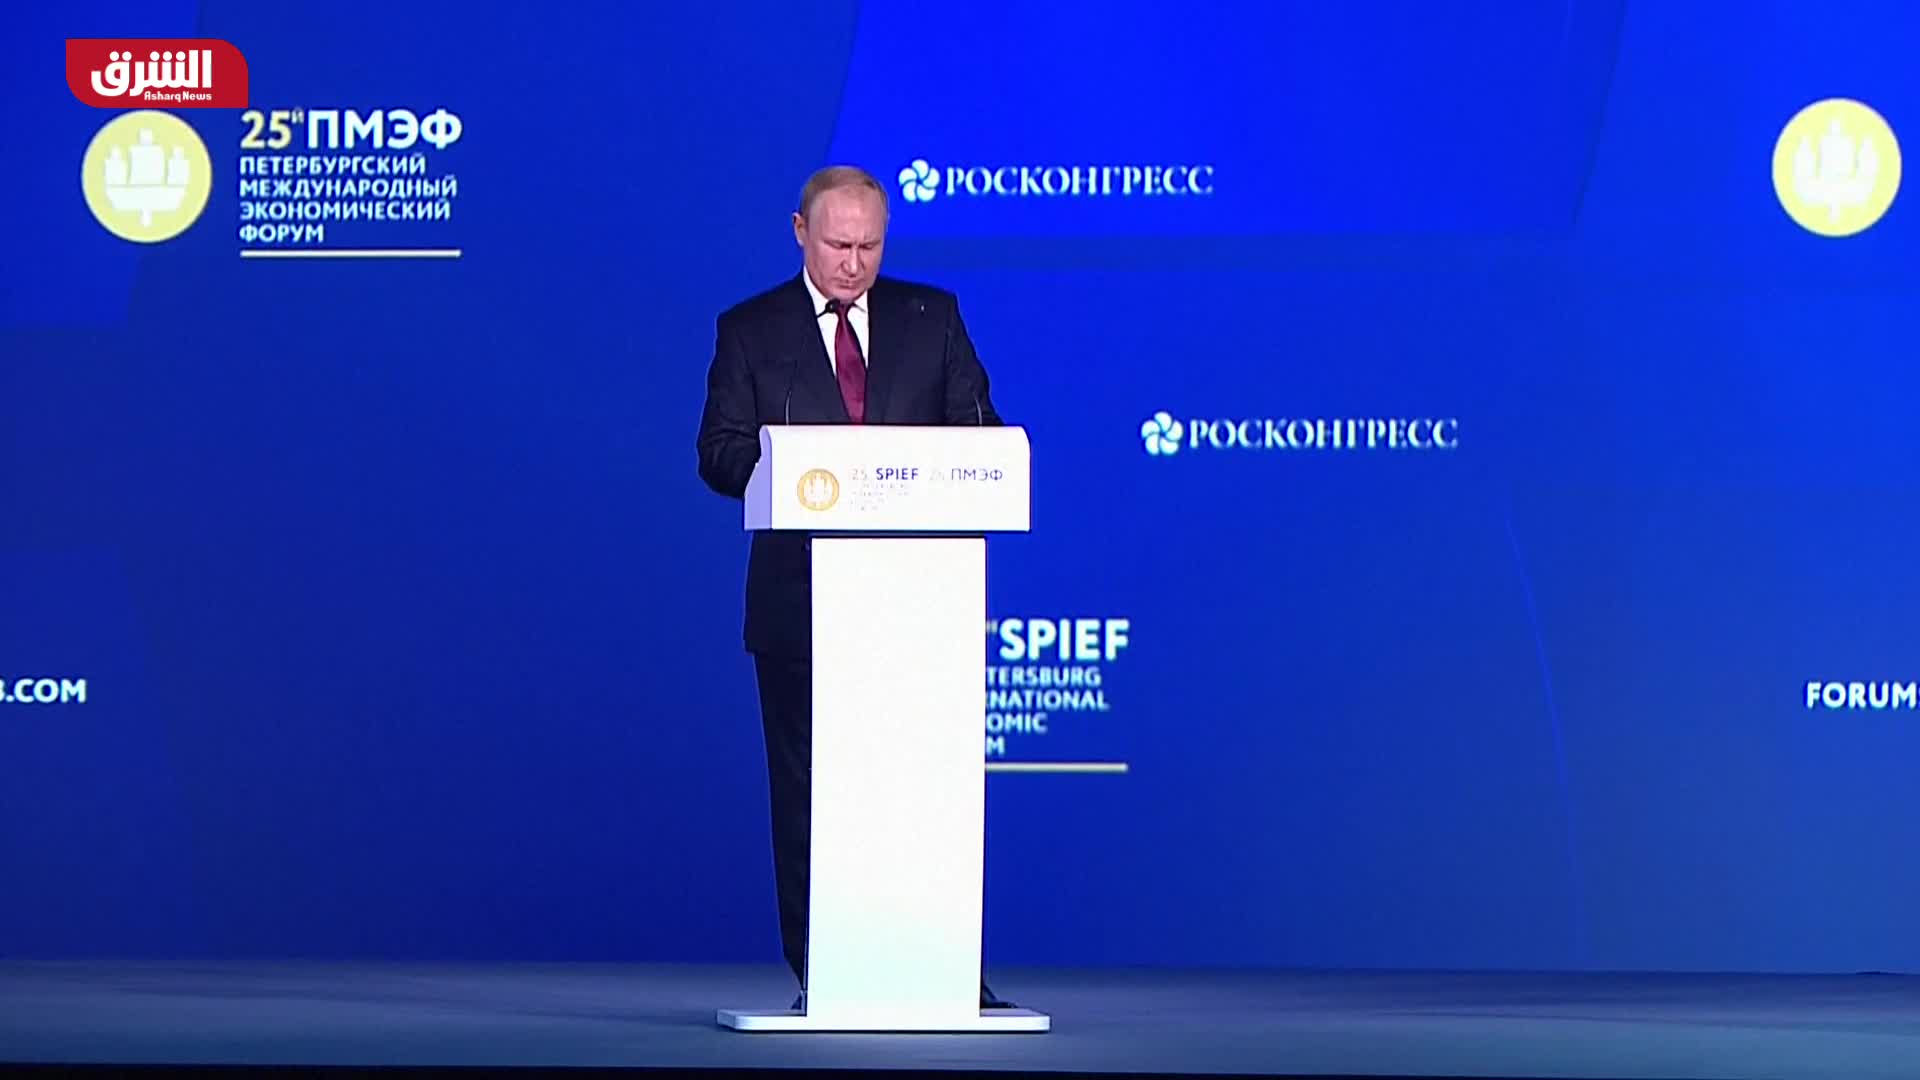 الرئيس الروسي فلاديمير بوتين يشارك في منتدى سانت بطرسبرج الاقتصادي الدولي